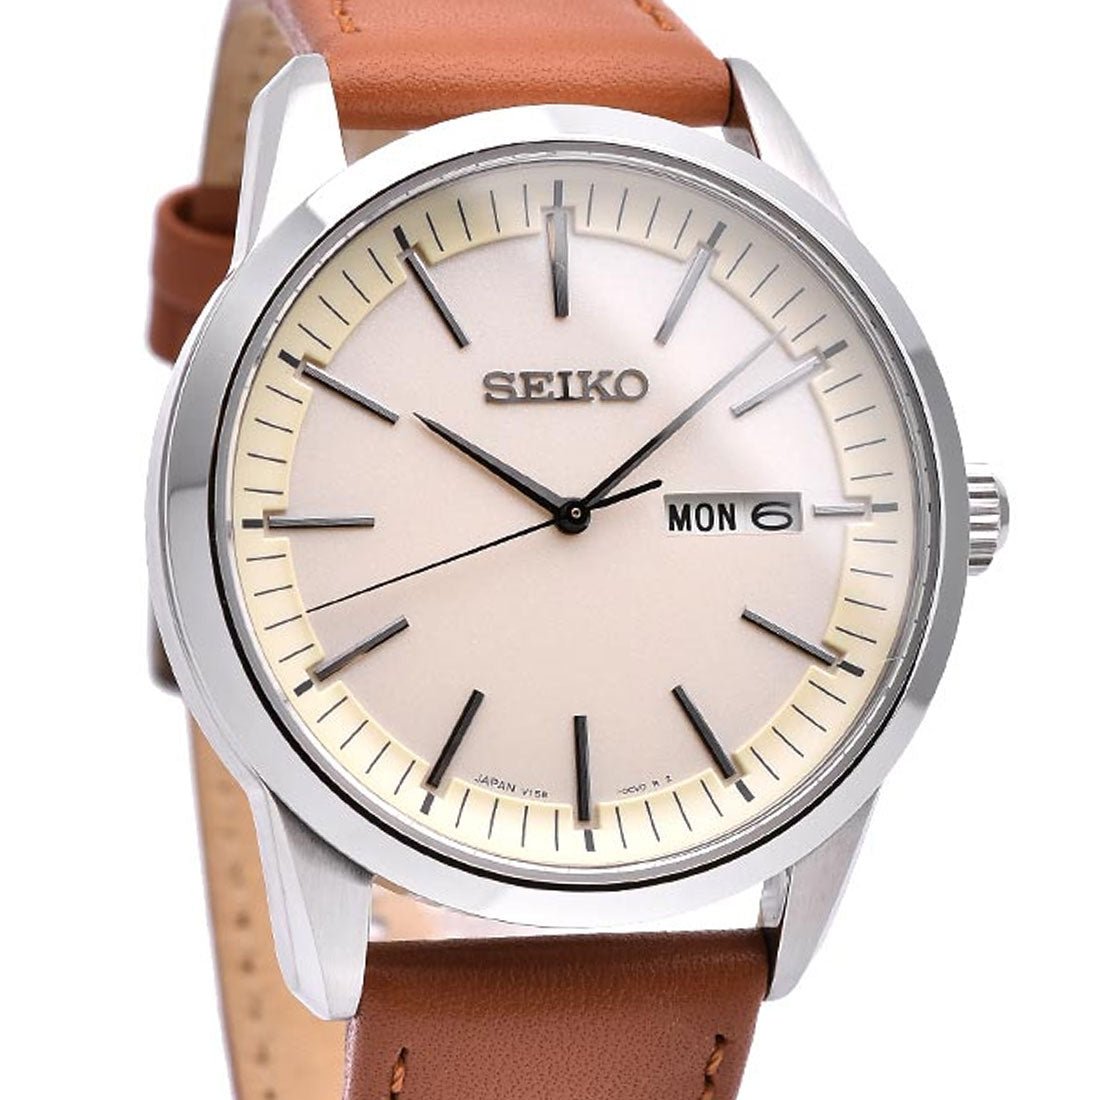 Seiko Selection Solar JDM Watch SBPX125 -Seiko